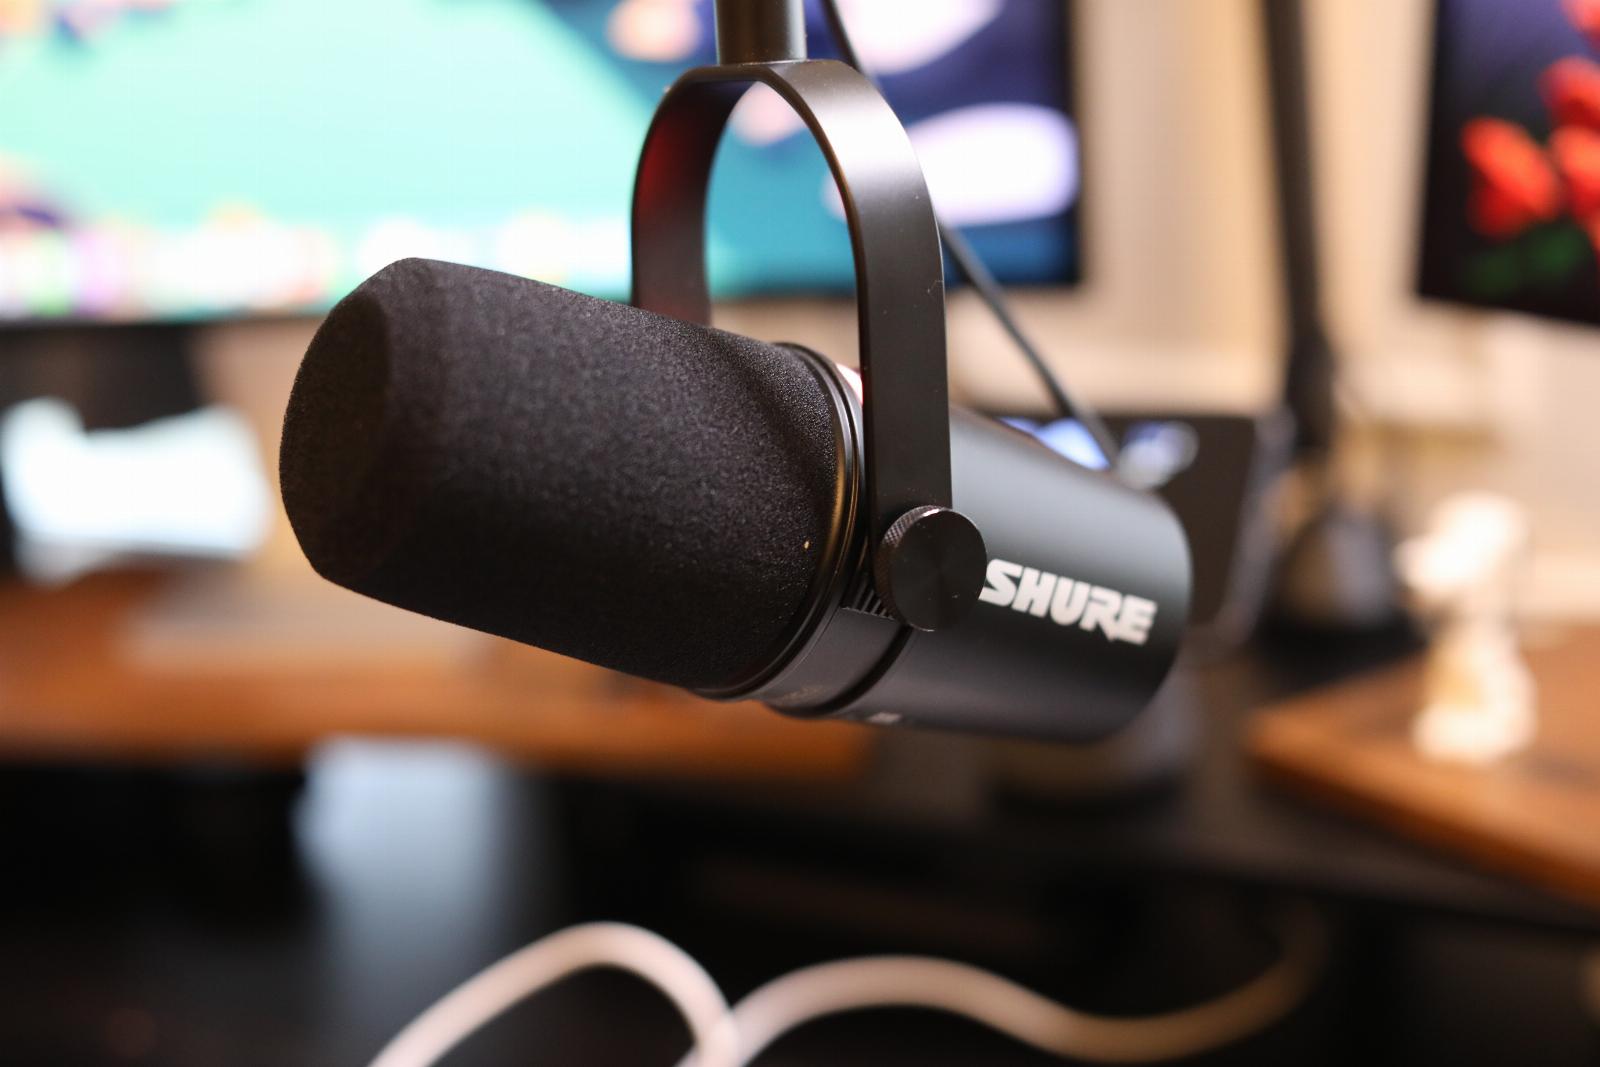 Shure MV7+: The best USB podcast mic gets better